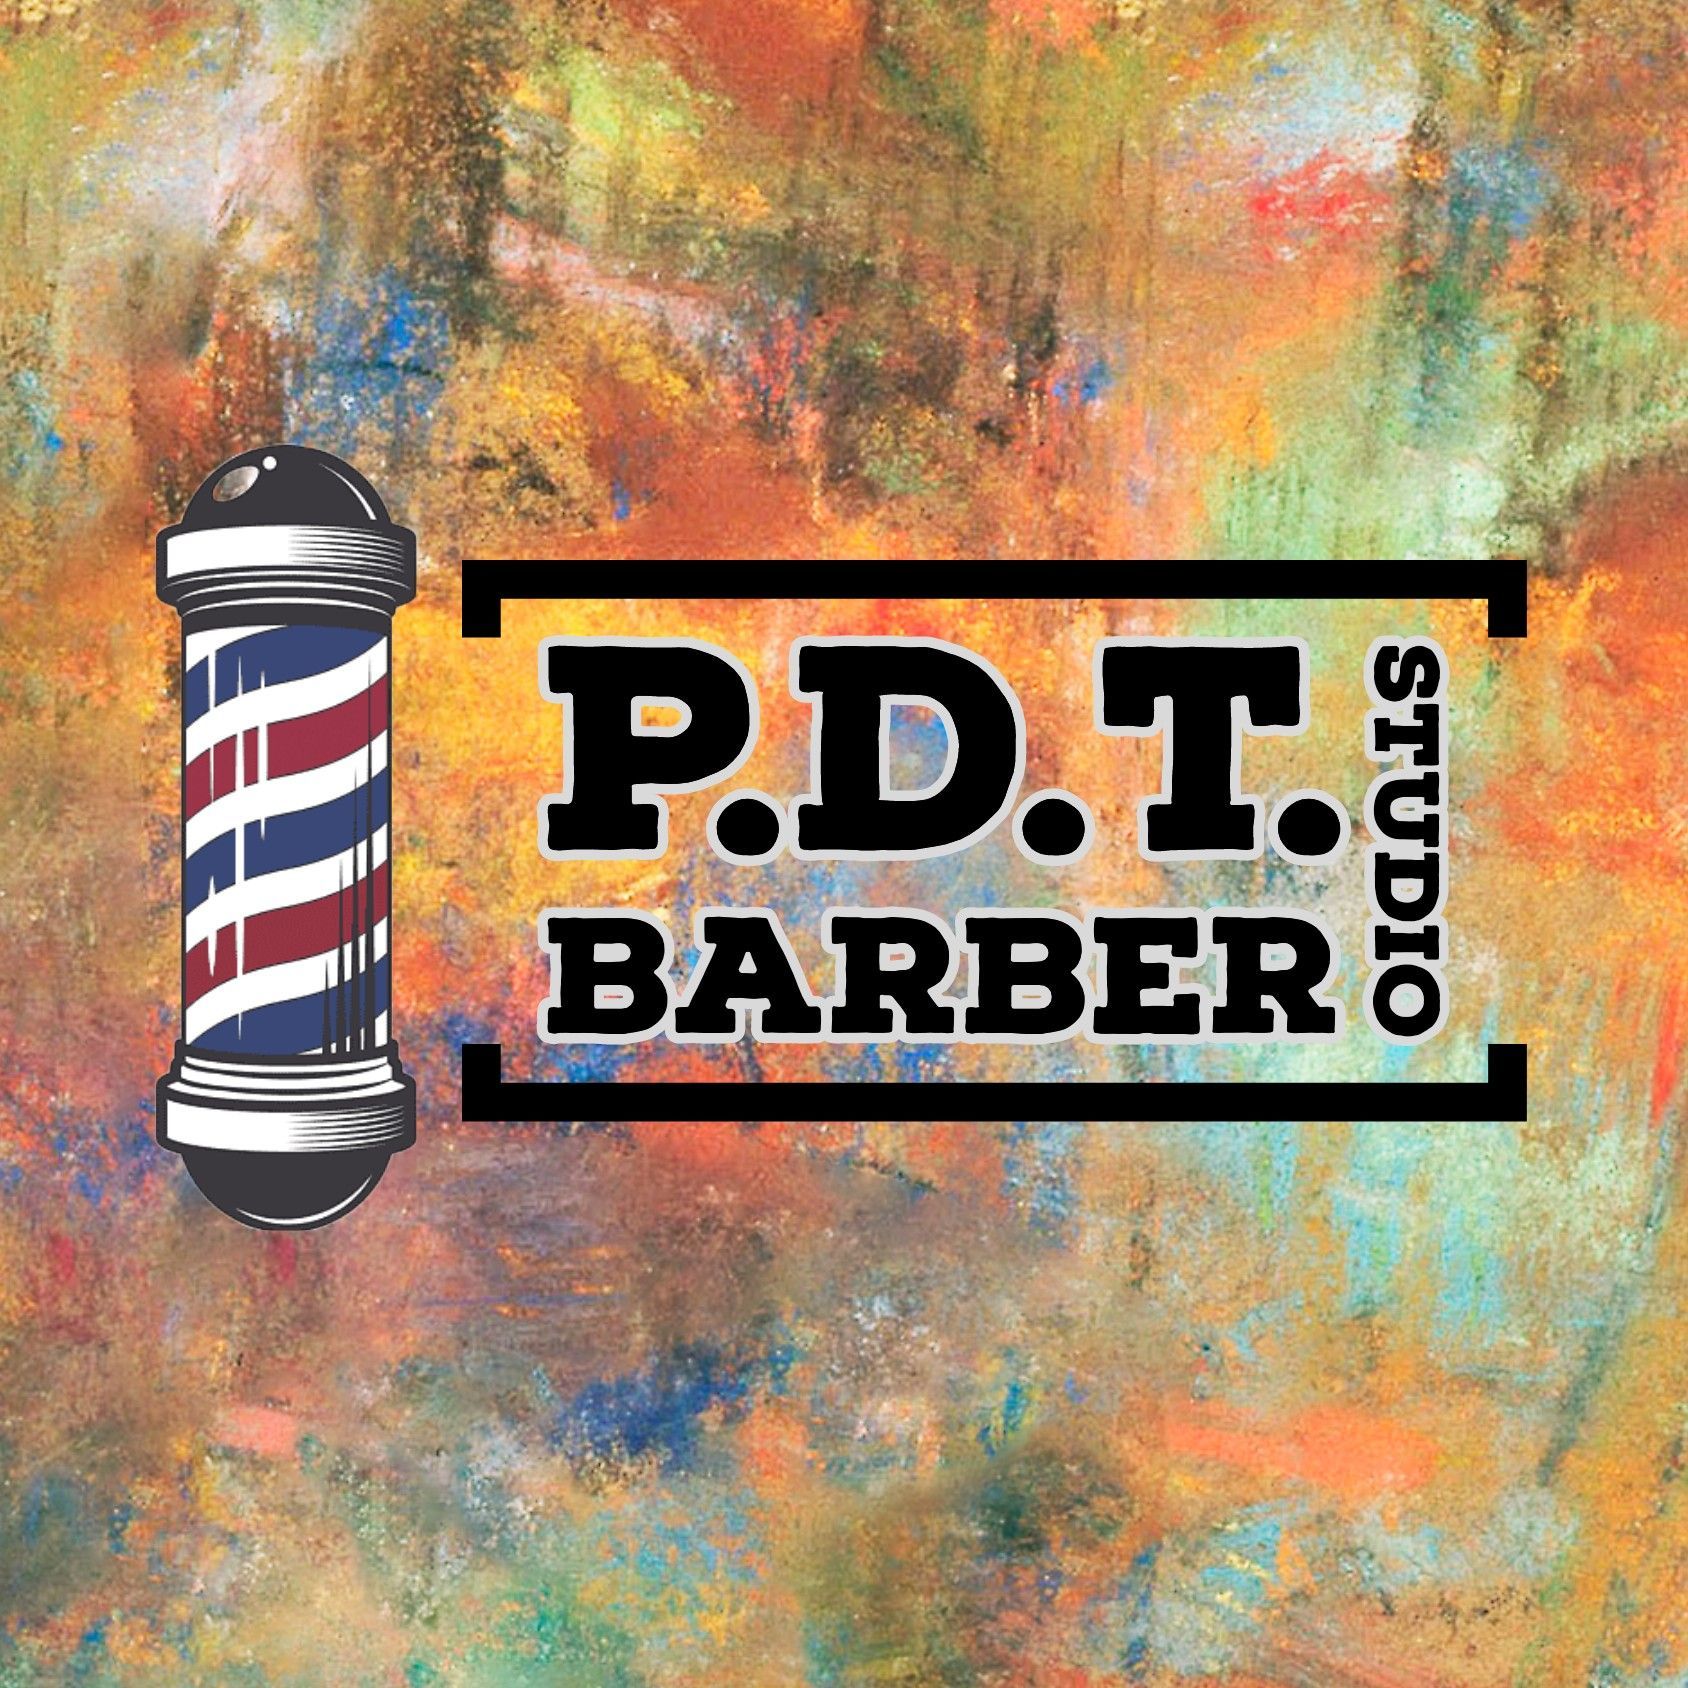 P.D.T. Barber Studio, 252 Avenida de la Constitucion, San Juan, 00901